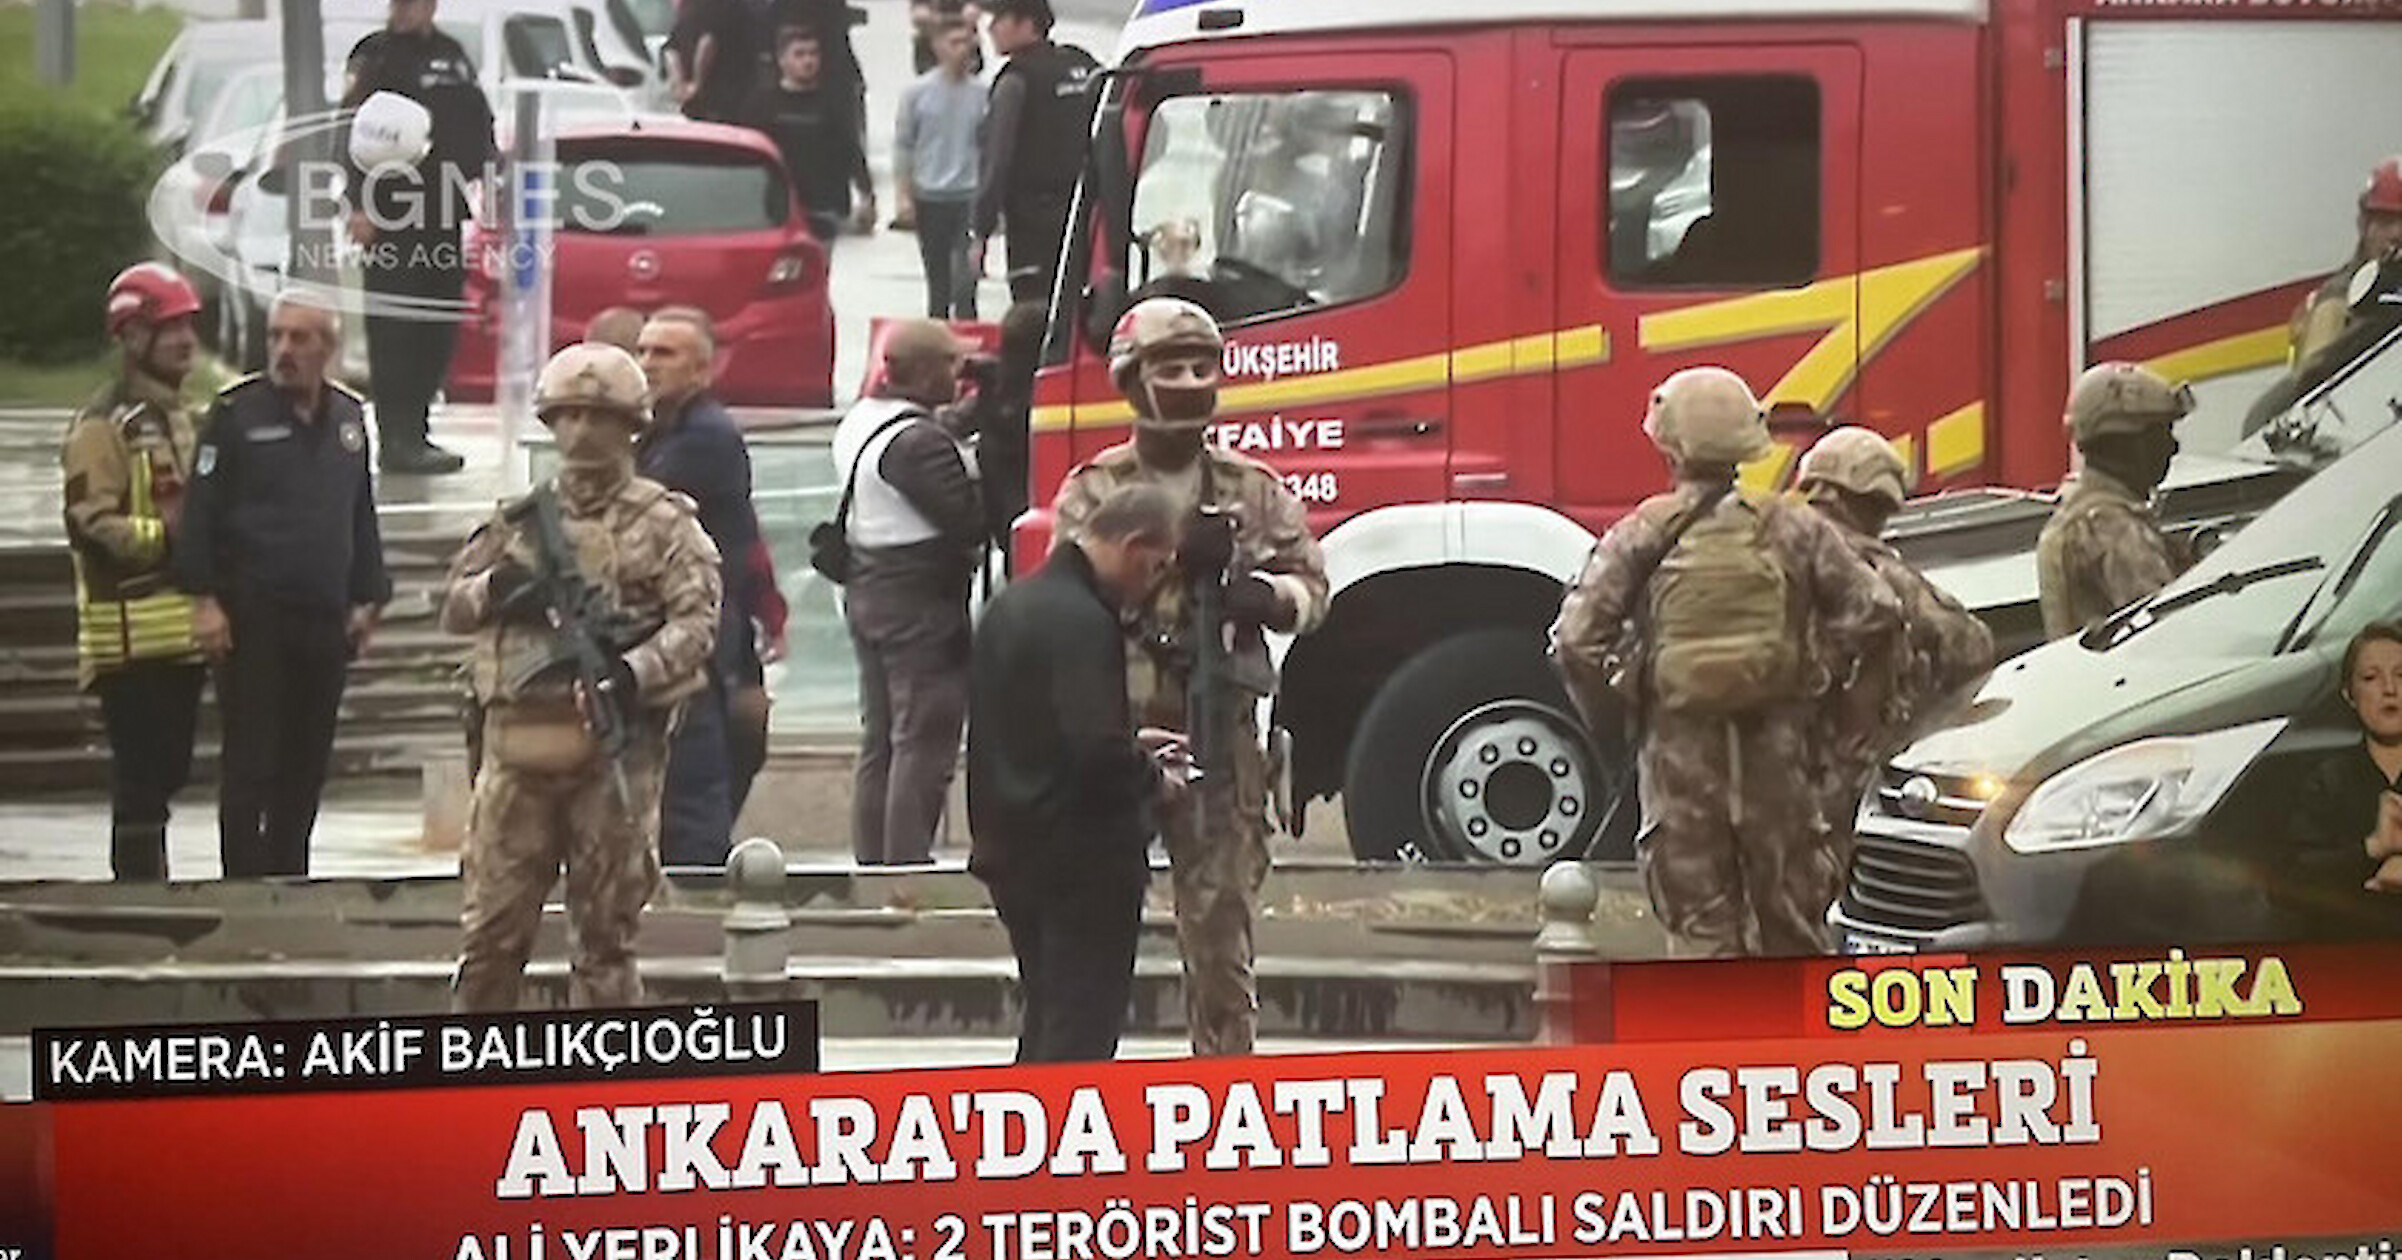 Експлозия се чу в неделя в турската столица Анкара близо